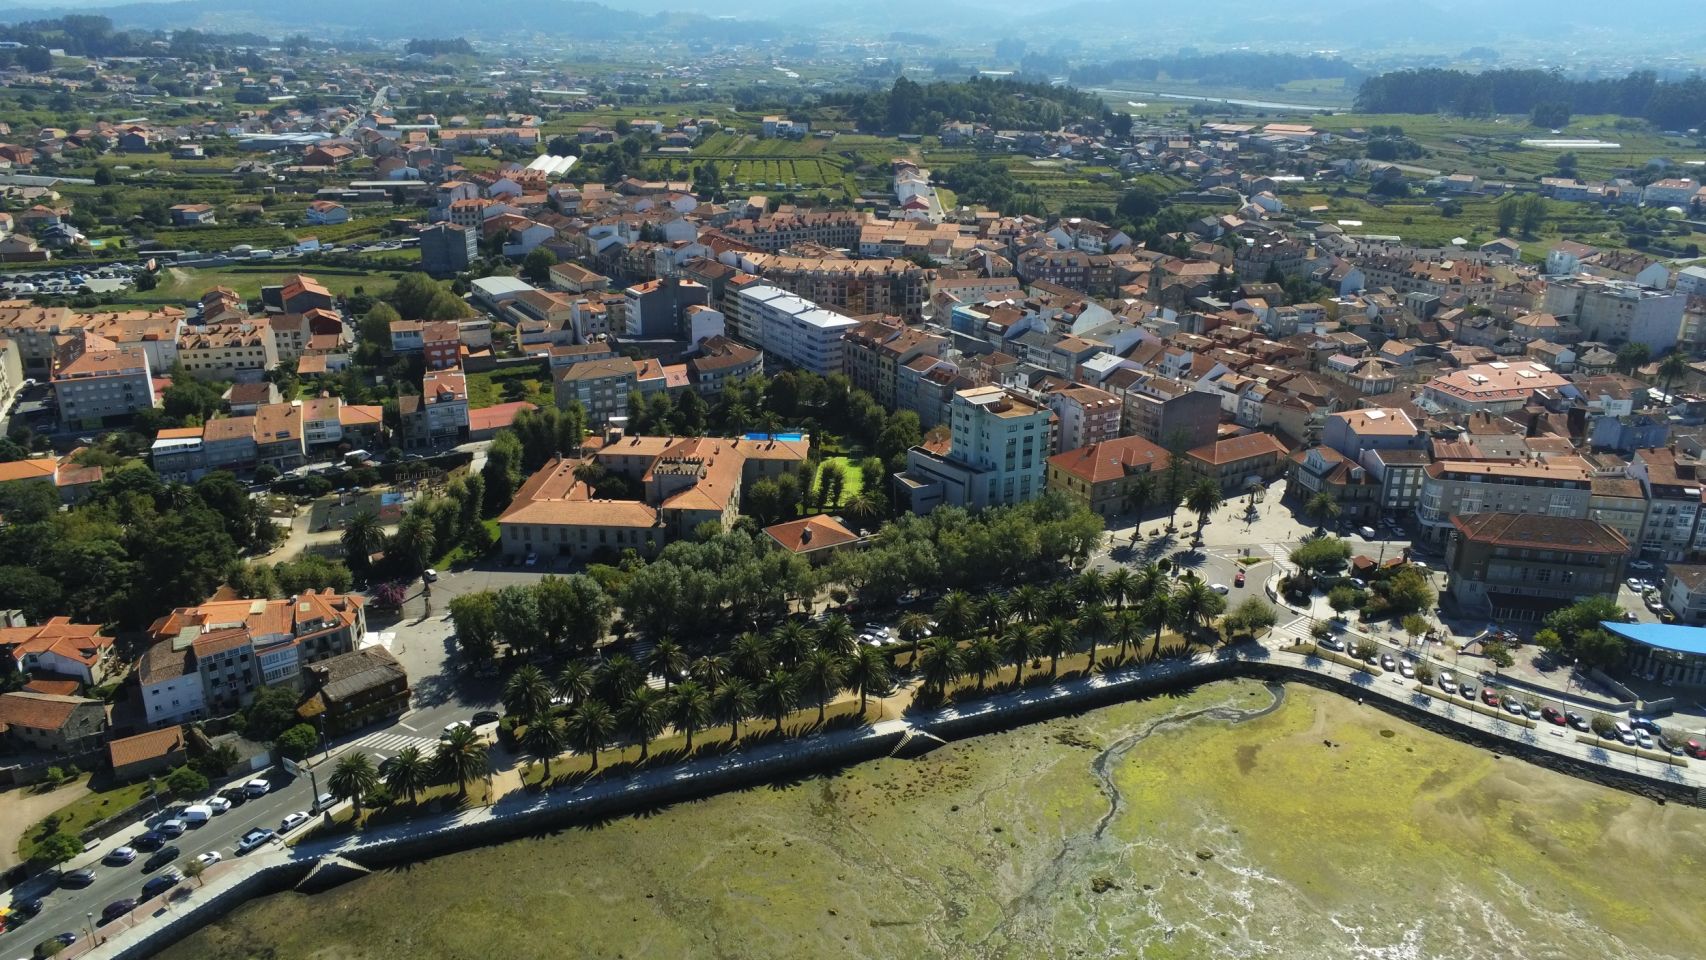 Vista aérea del municipio de Cambados (Pontevedra).